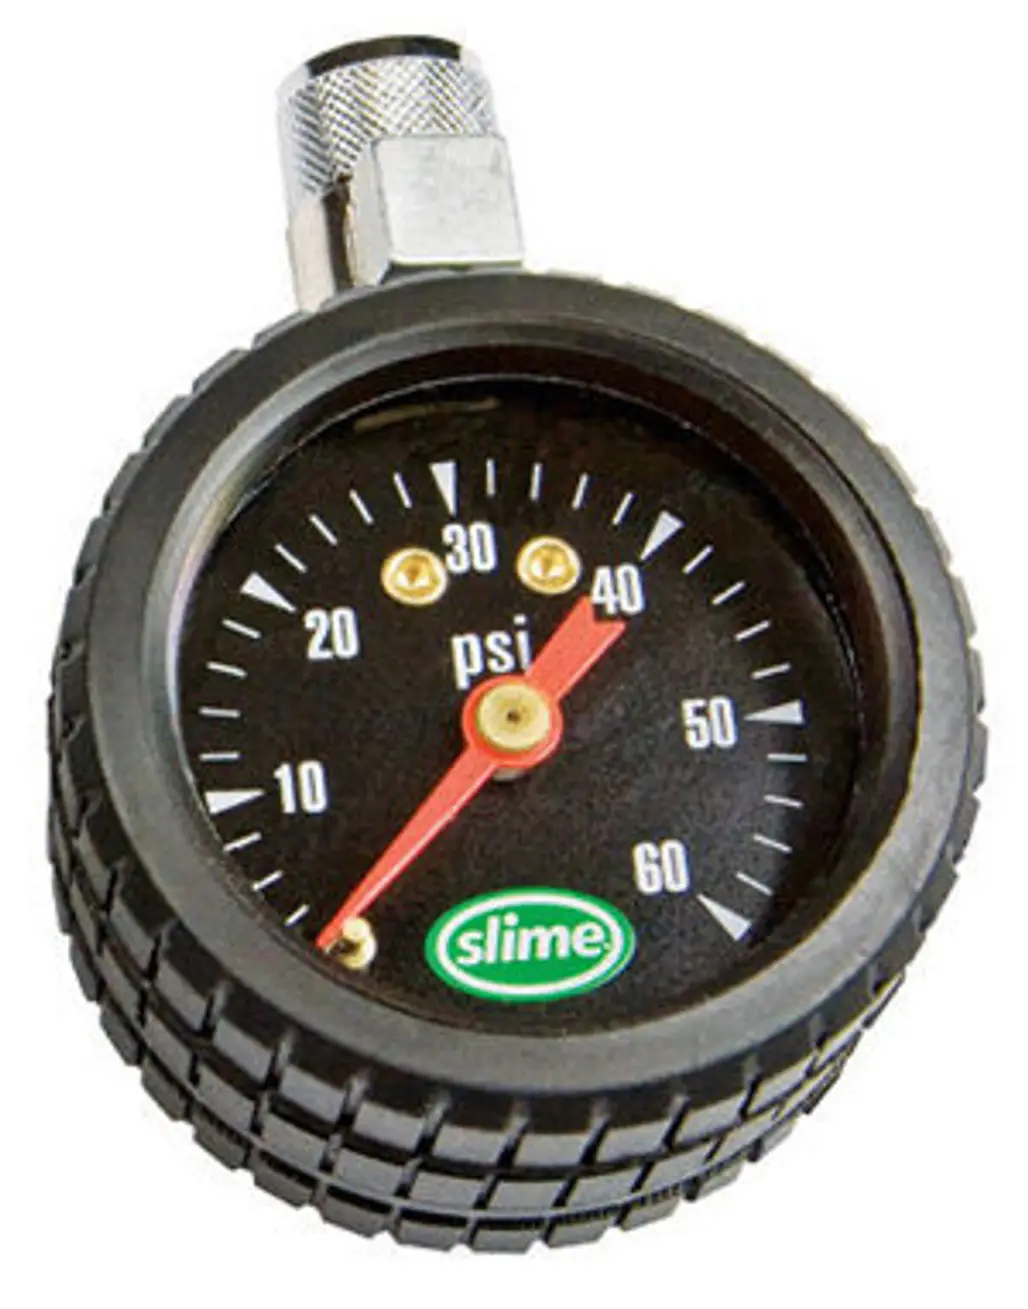 Slime Tire Pressure Gauge